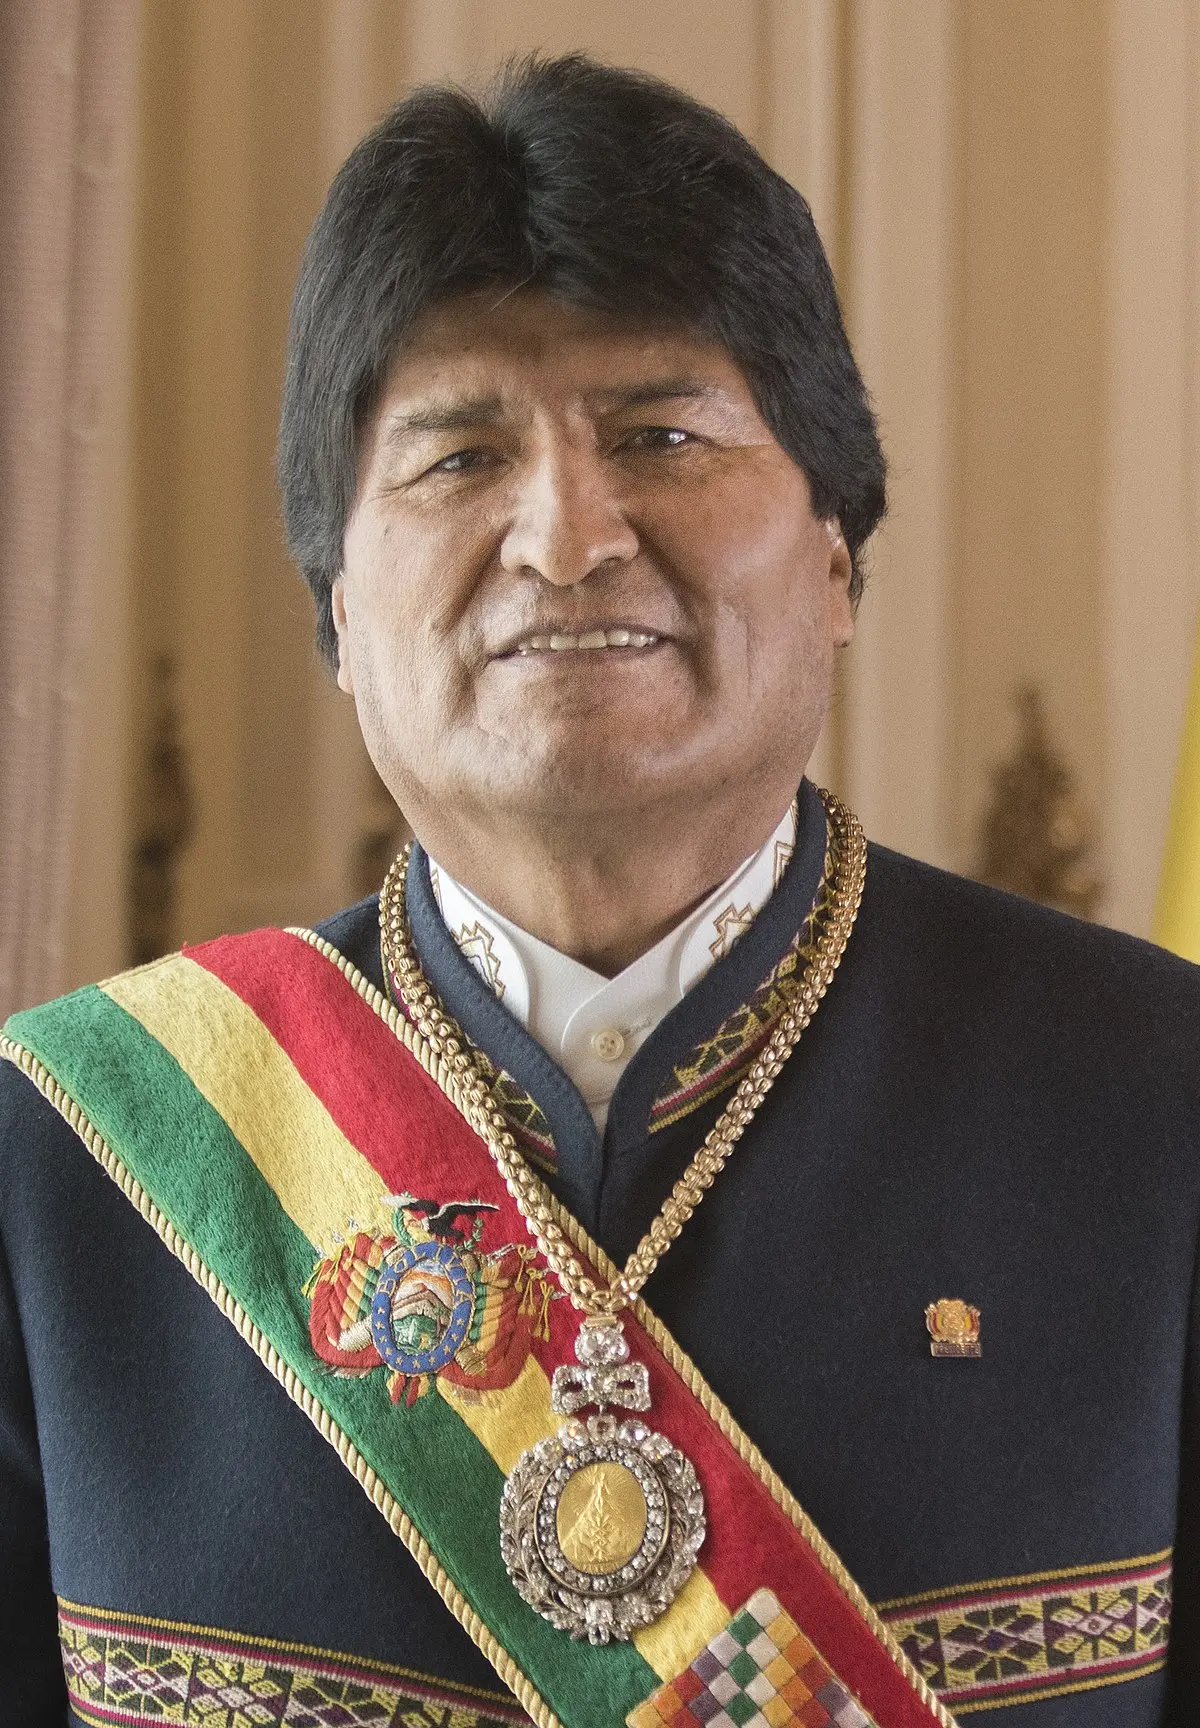 gabriela montaño y evo morales son pareja - Dónde está Evo Morales